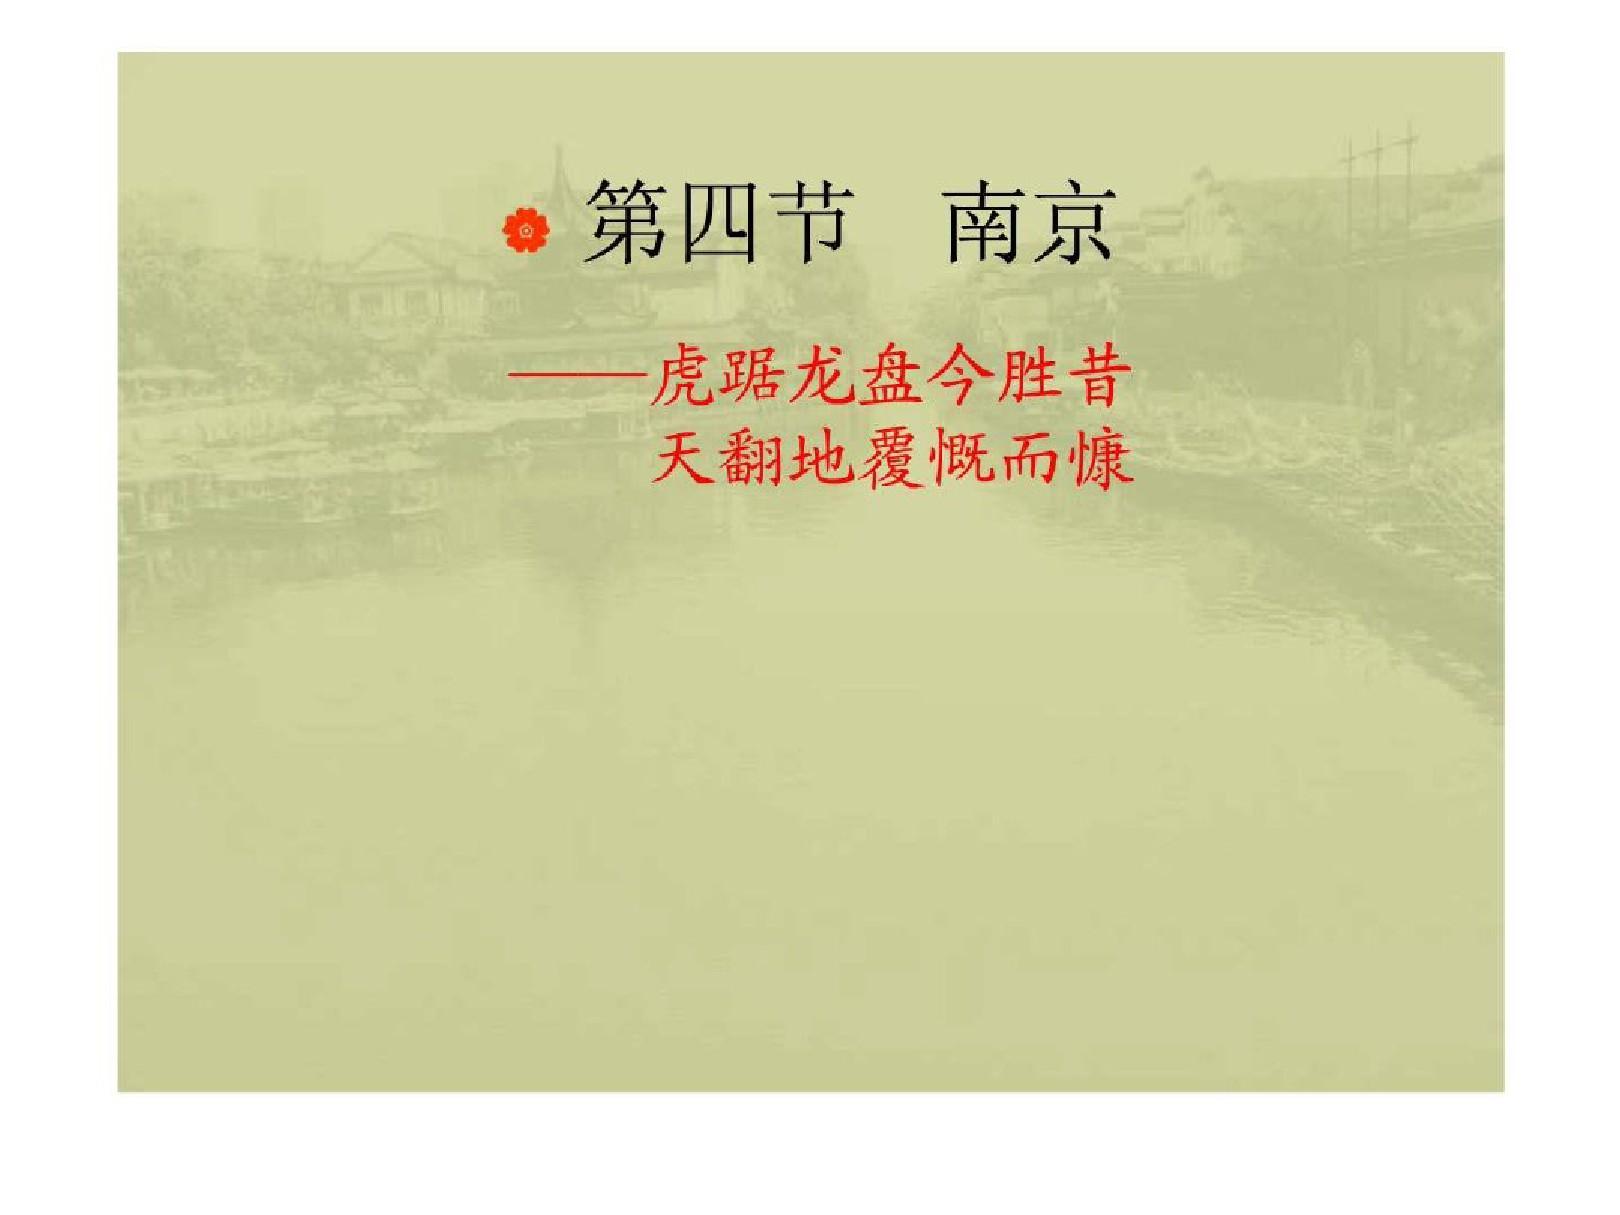 中国历史文化名城——南京.ppt学习资料